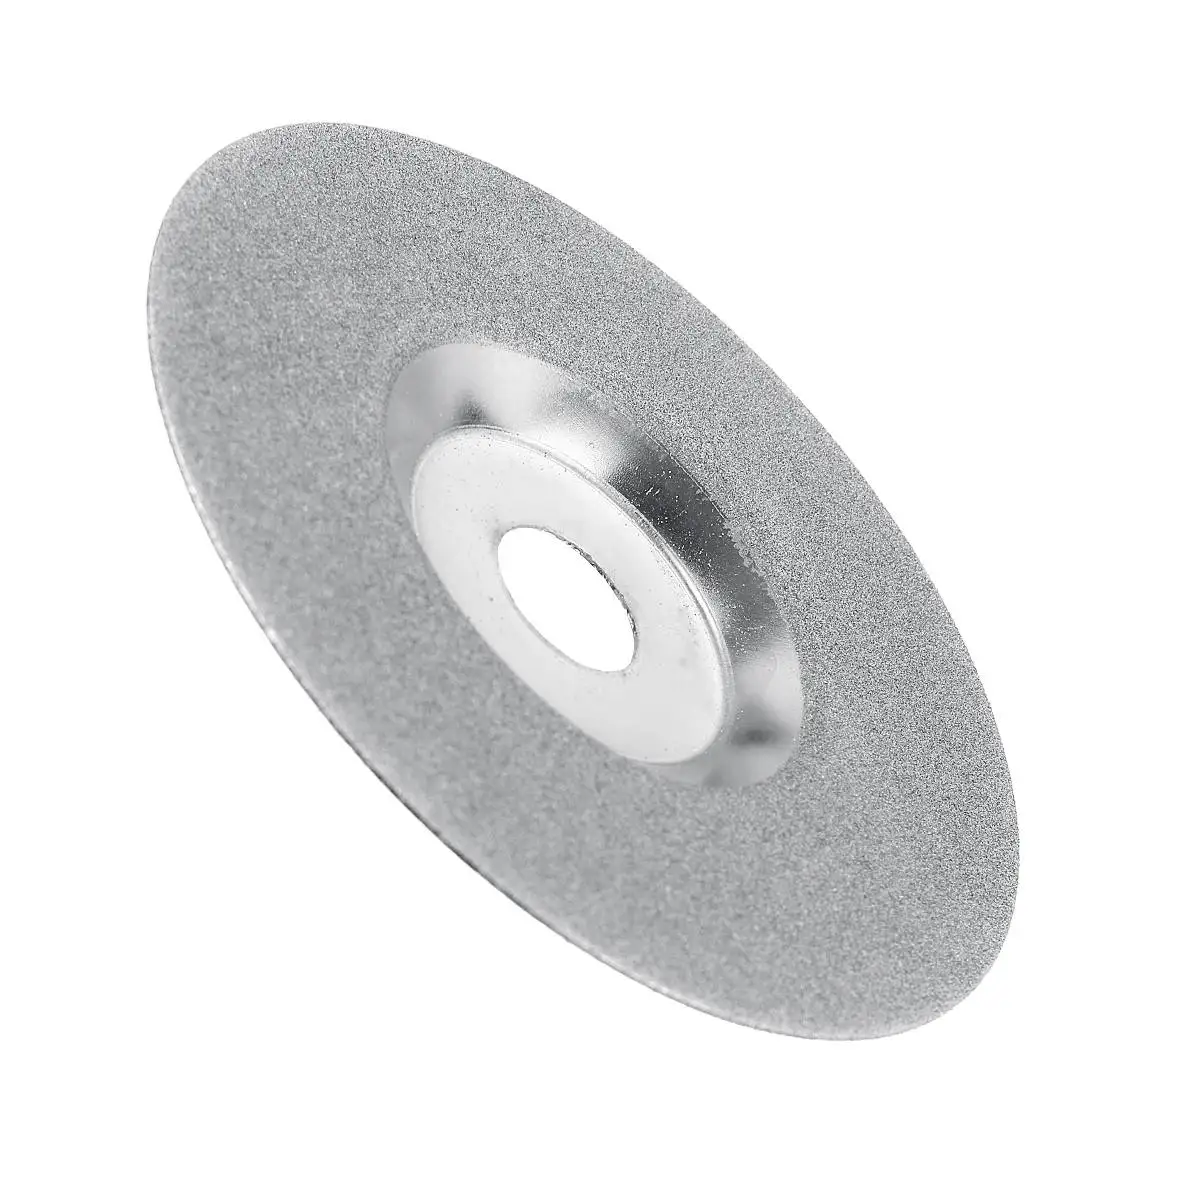 100 мм стекло керамогранит Алмазная Пила диск отрезной ролик для 16 мм угловой шлифователь электроинструменты